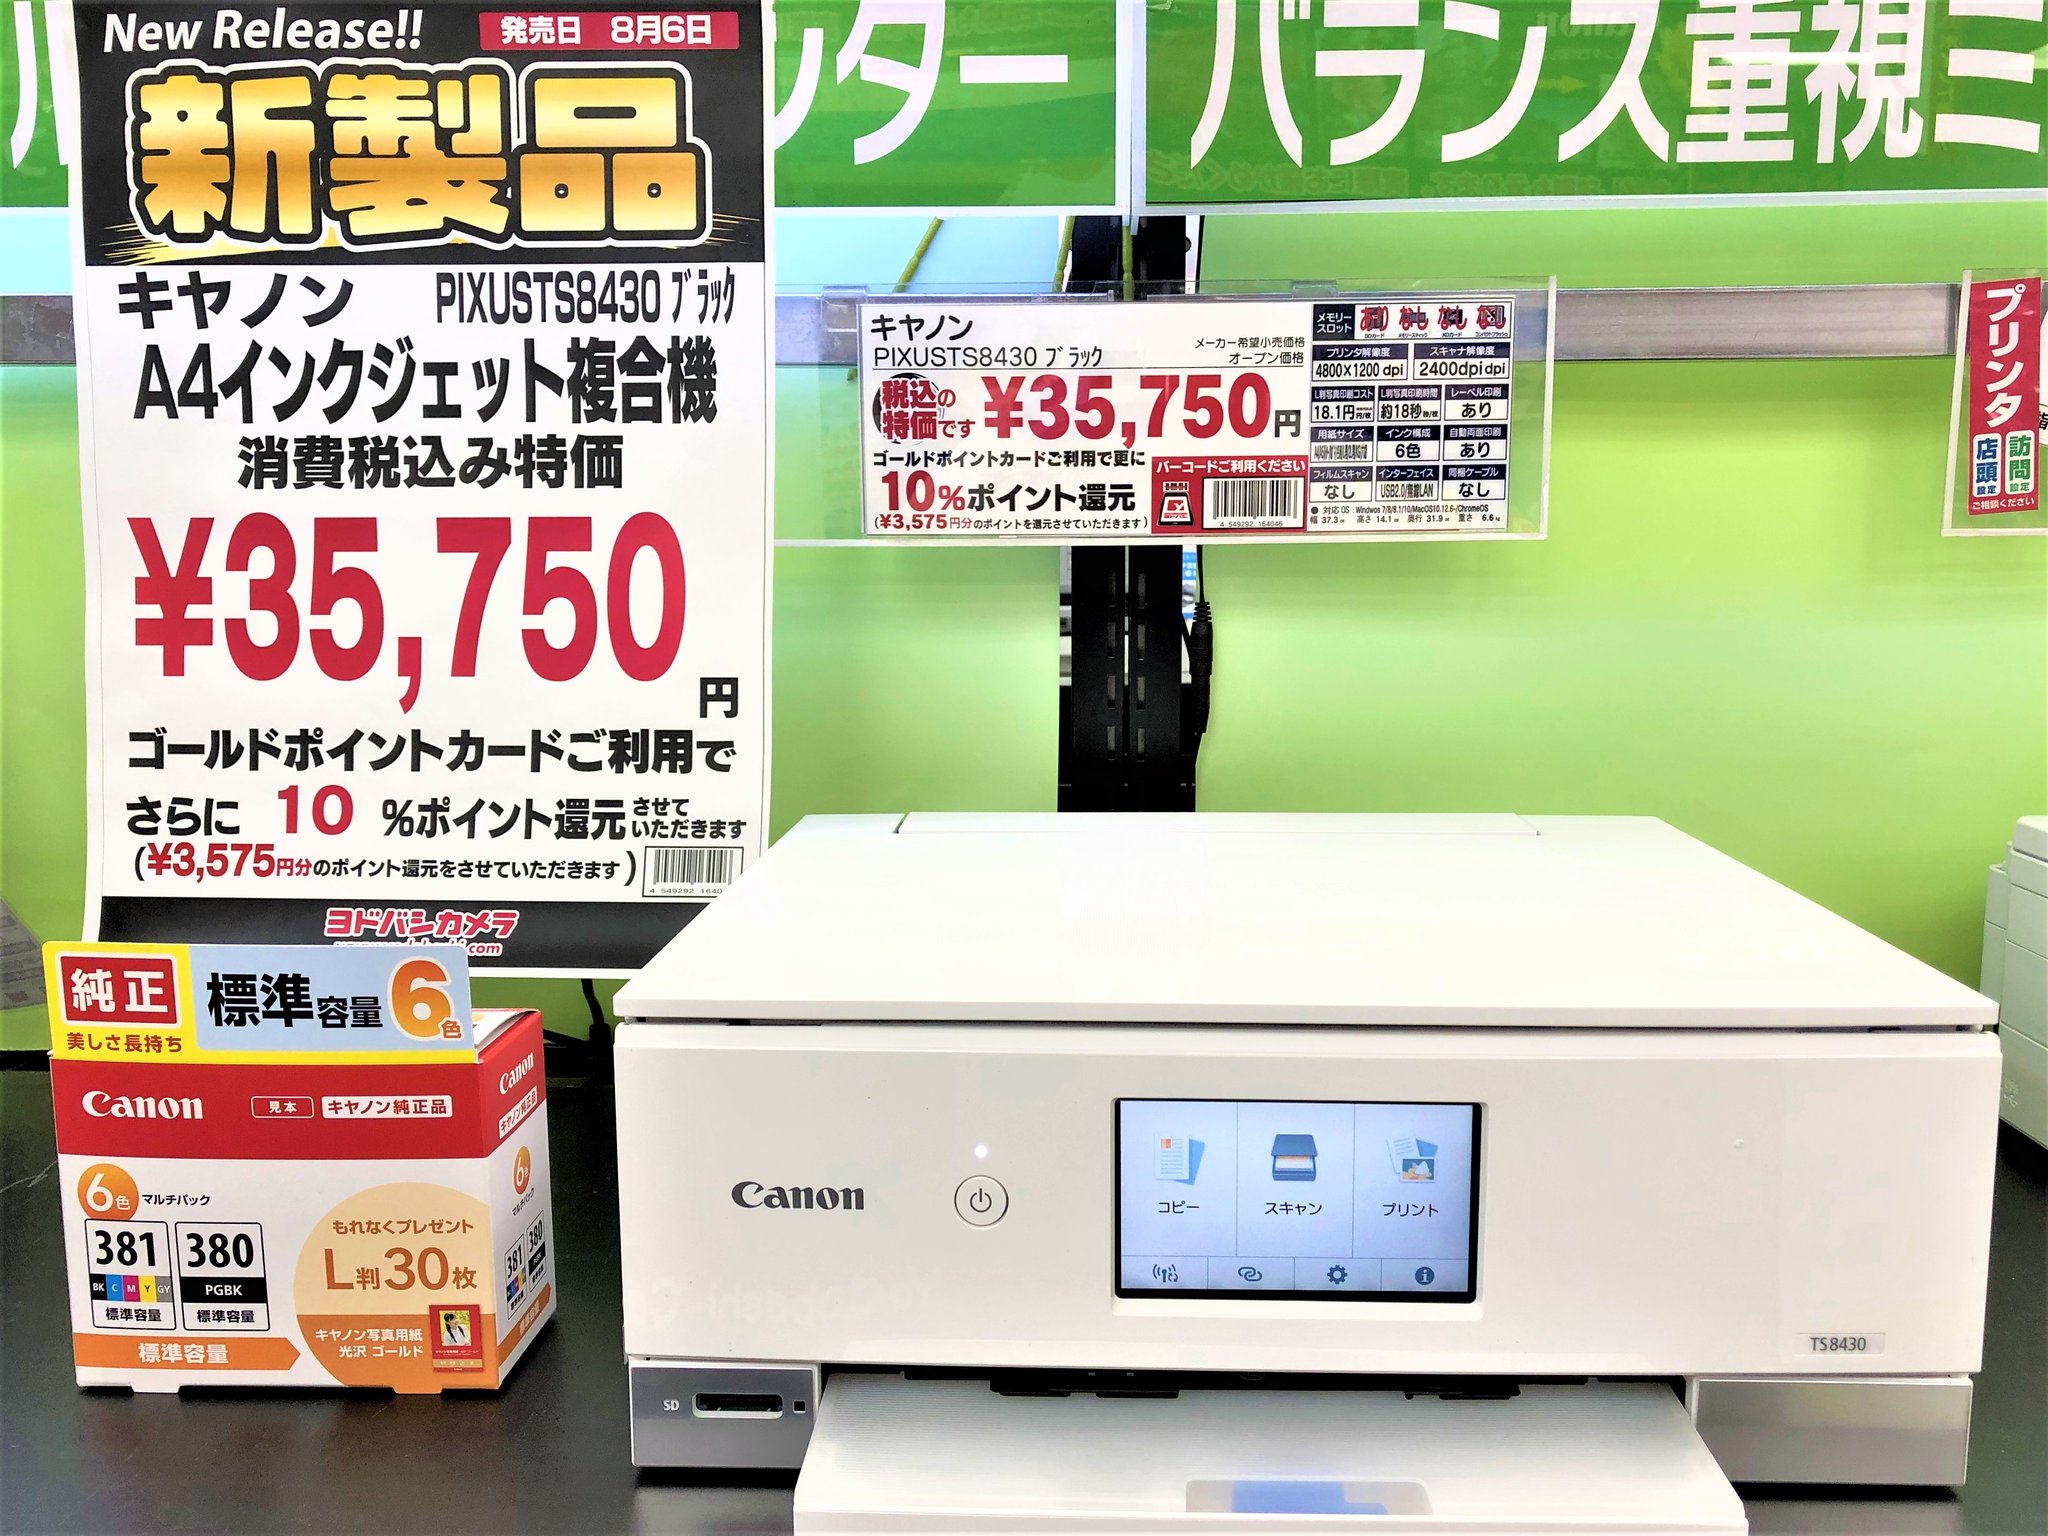 ヨドバシカメラ 千葉店 on Twitter: "／ #Canon インクジェット #複合機 #PIXUS TS8430が8/6に新発売 ️